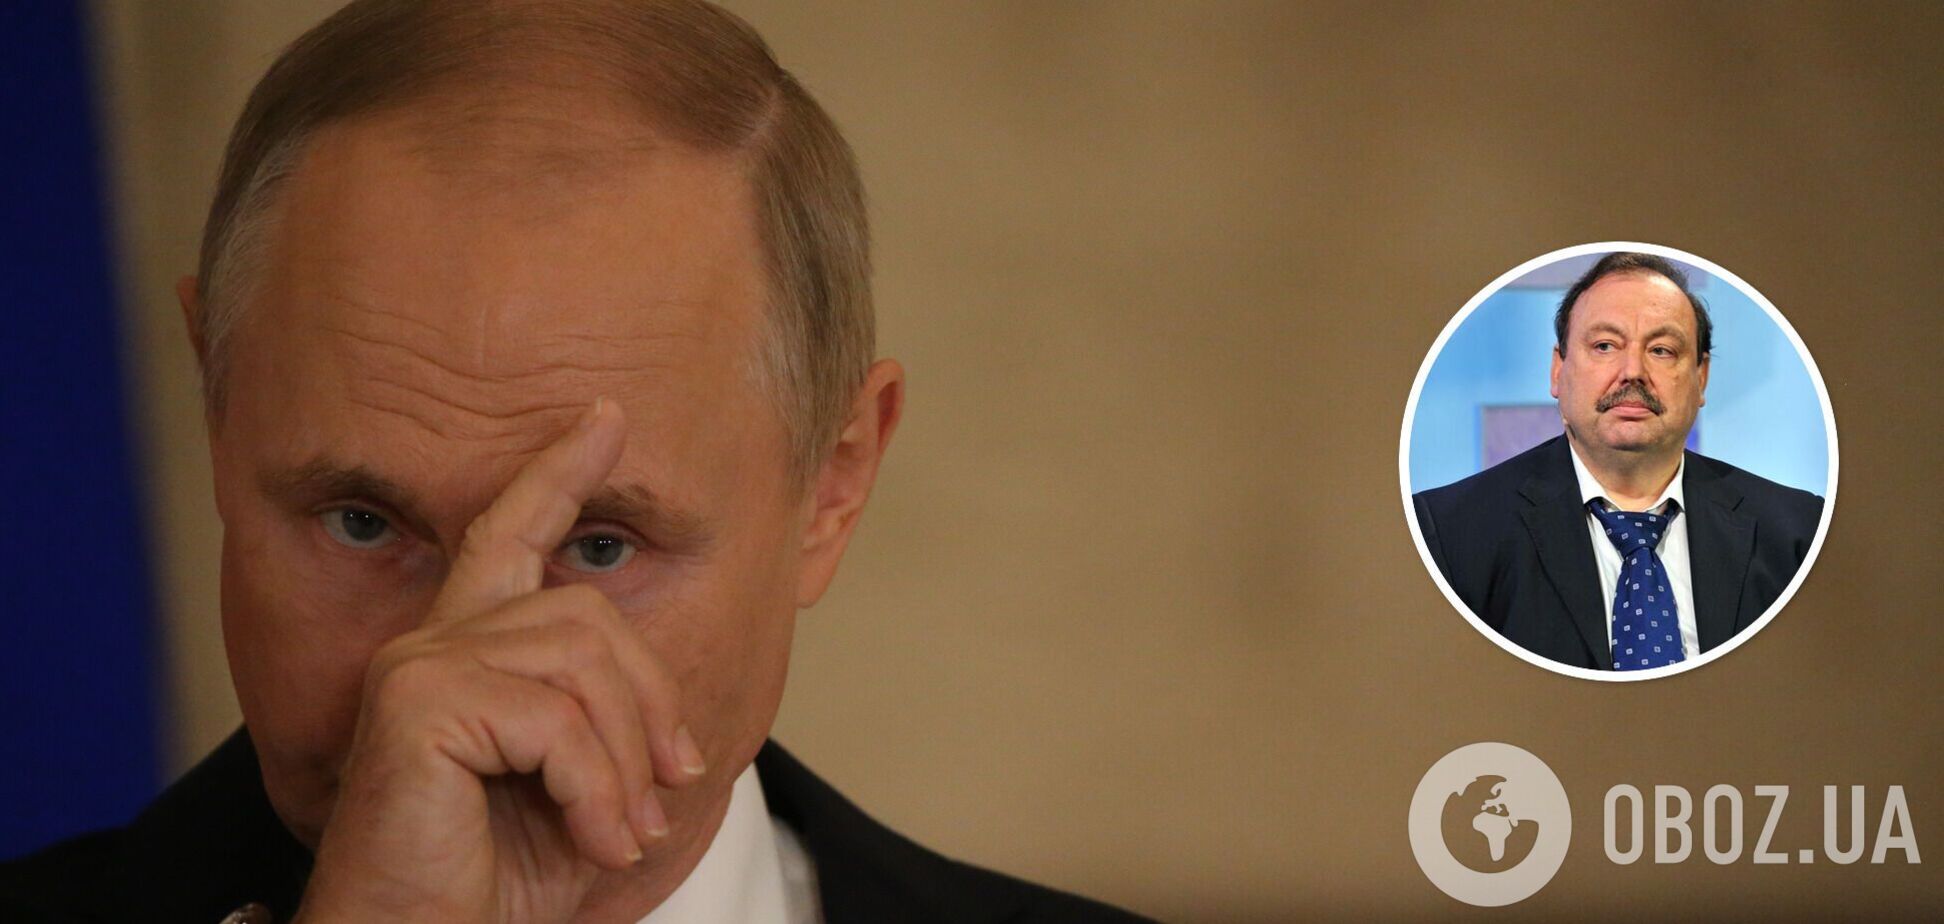 Окружение может обменять Путина на гарантии Запада: оппозиционер Гудков назвал вероятные сценарии